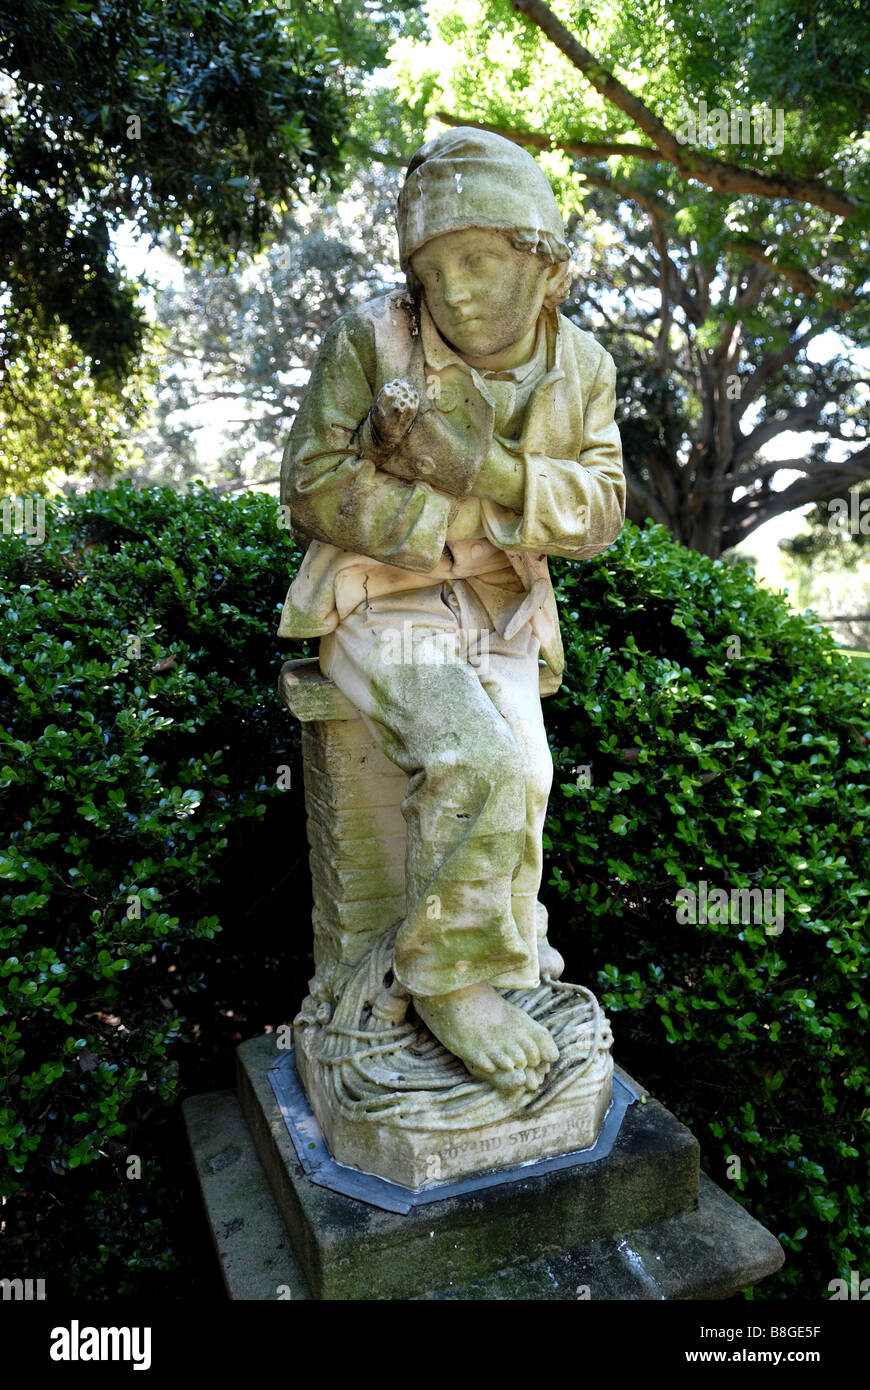 Statue eines Sweep-Jungen aus der Donizetti-Oper "Linda da Chamonix". Royal Botanic Gardens, Sydney, Australien Stockfoto